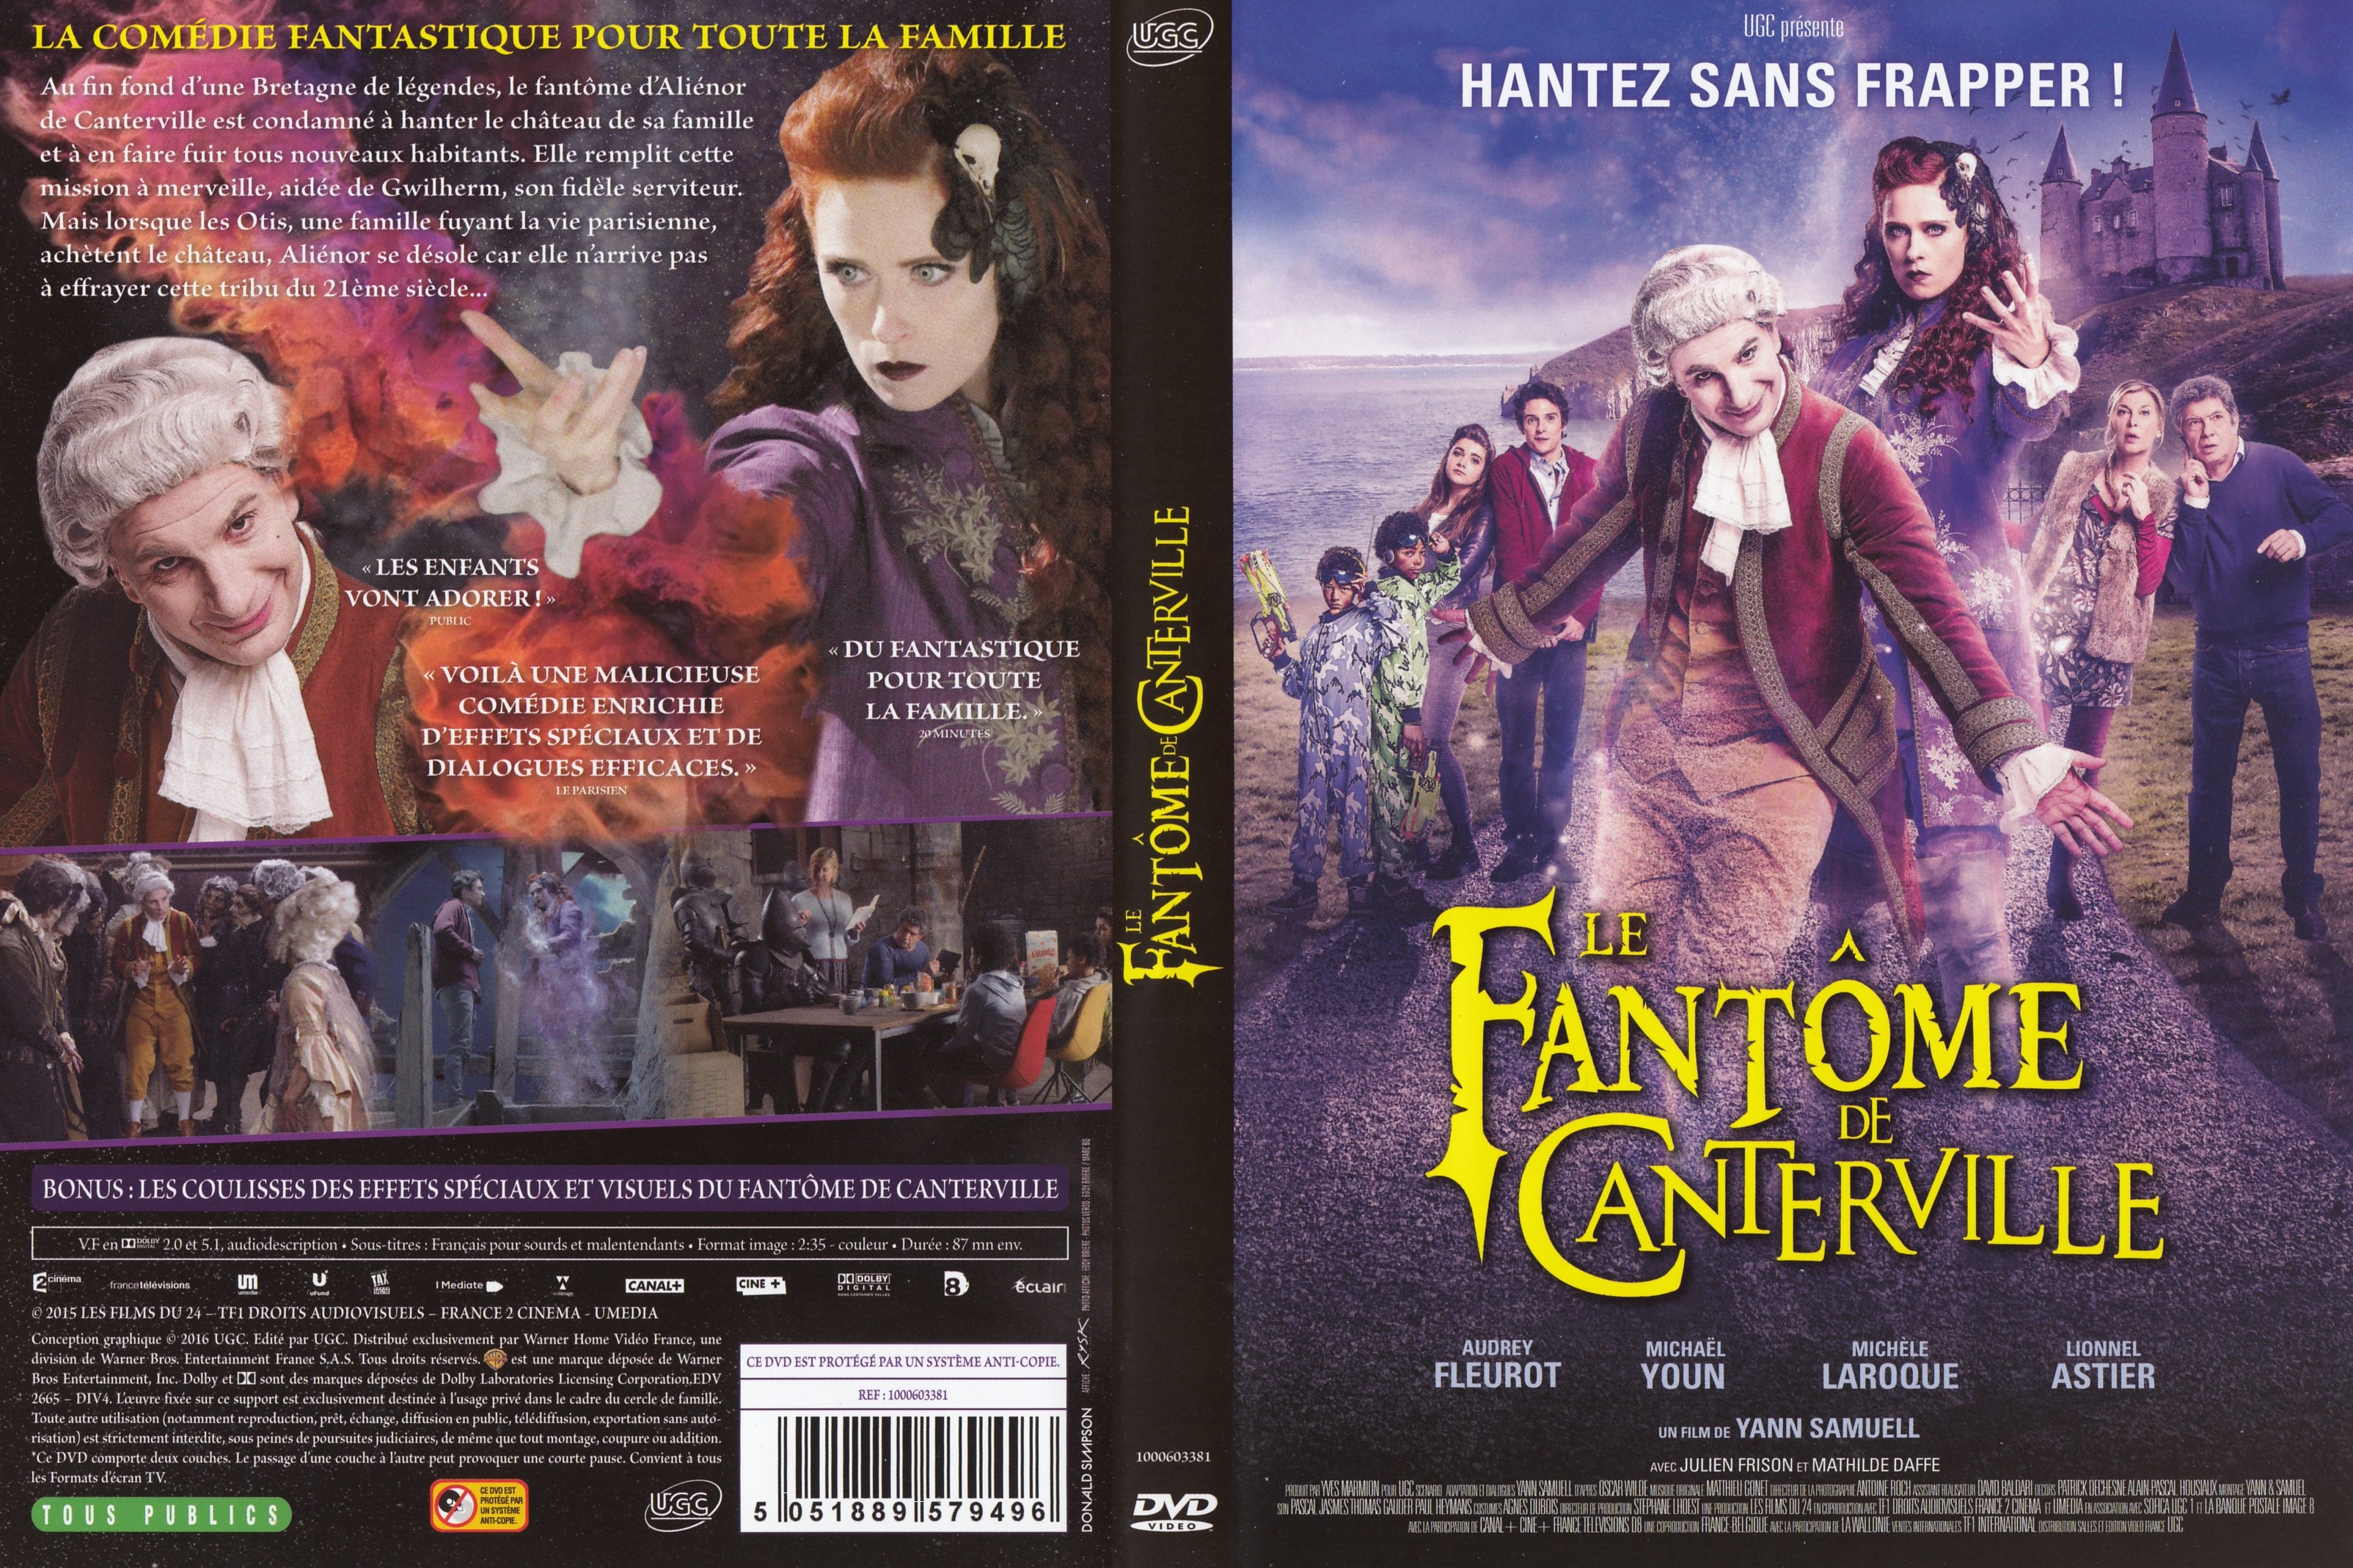 Jaquette DVD Le Fantme de Canterville (2015)